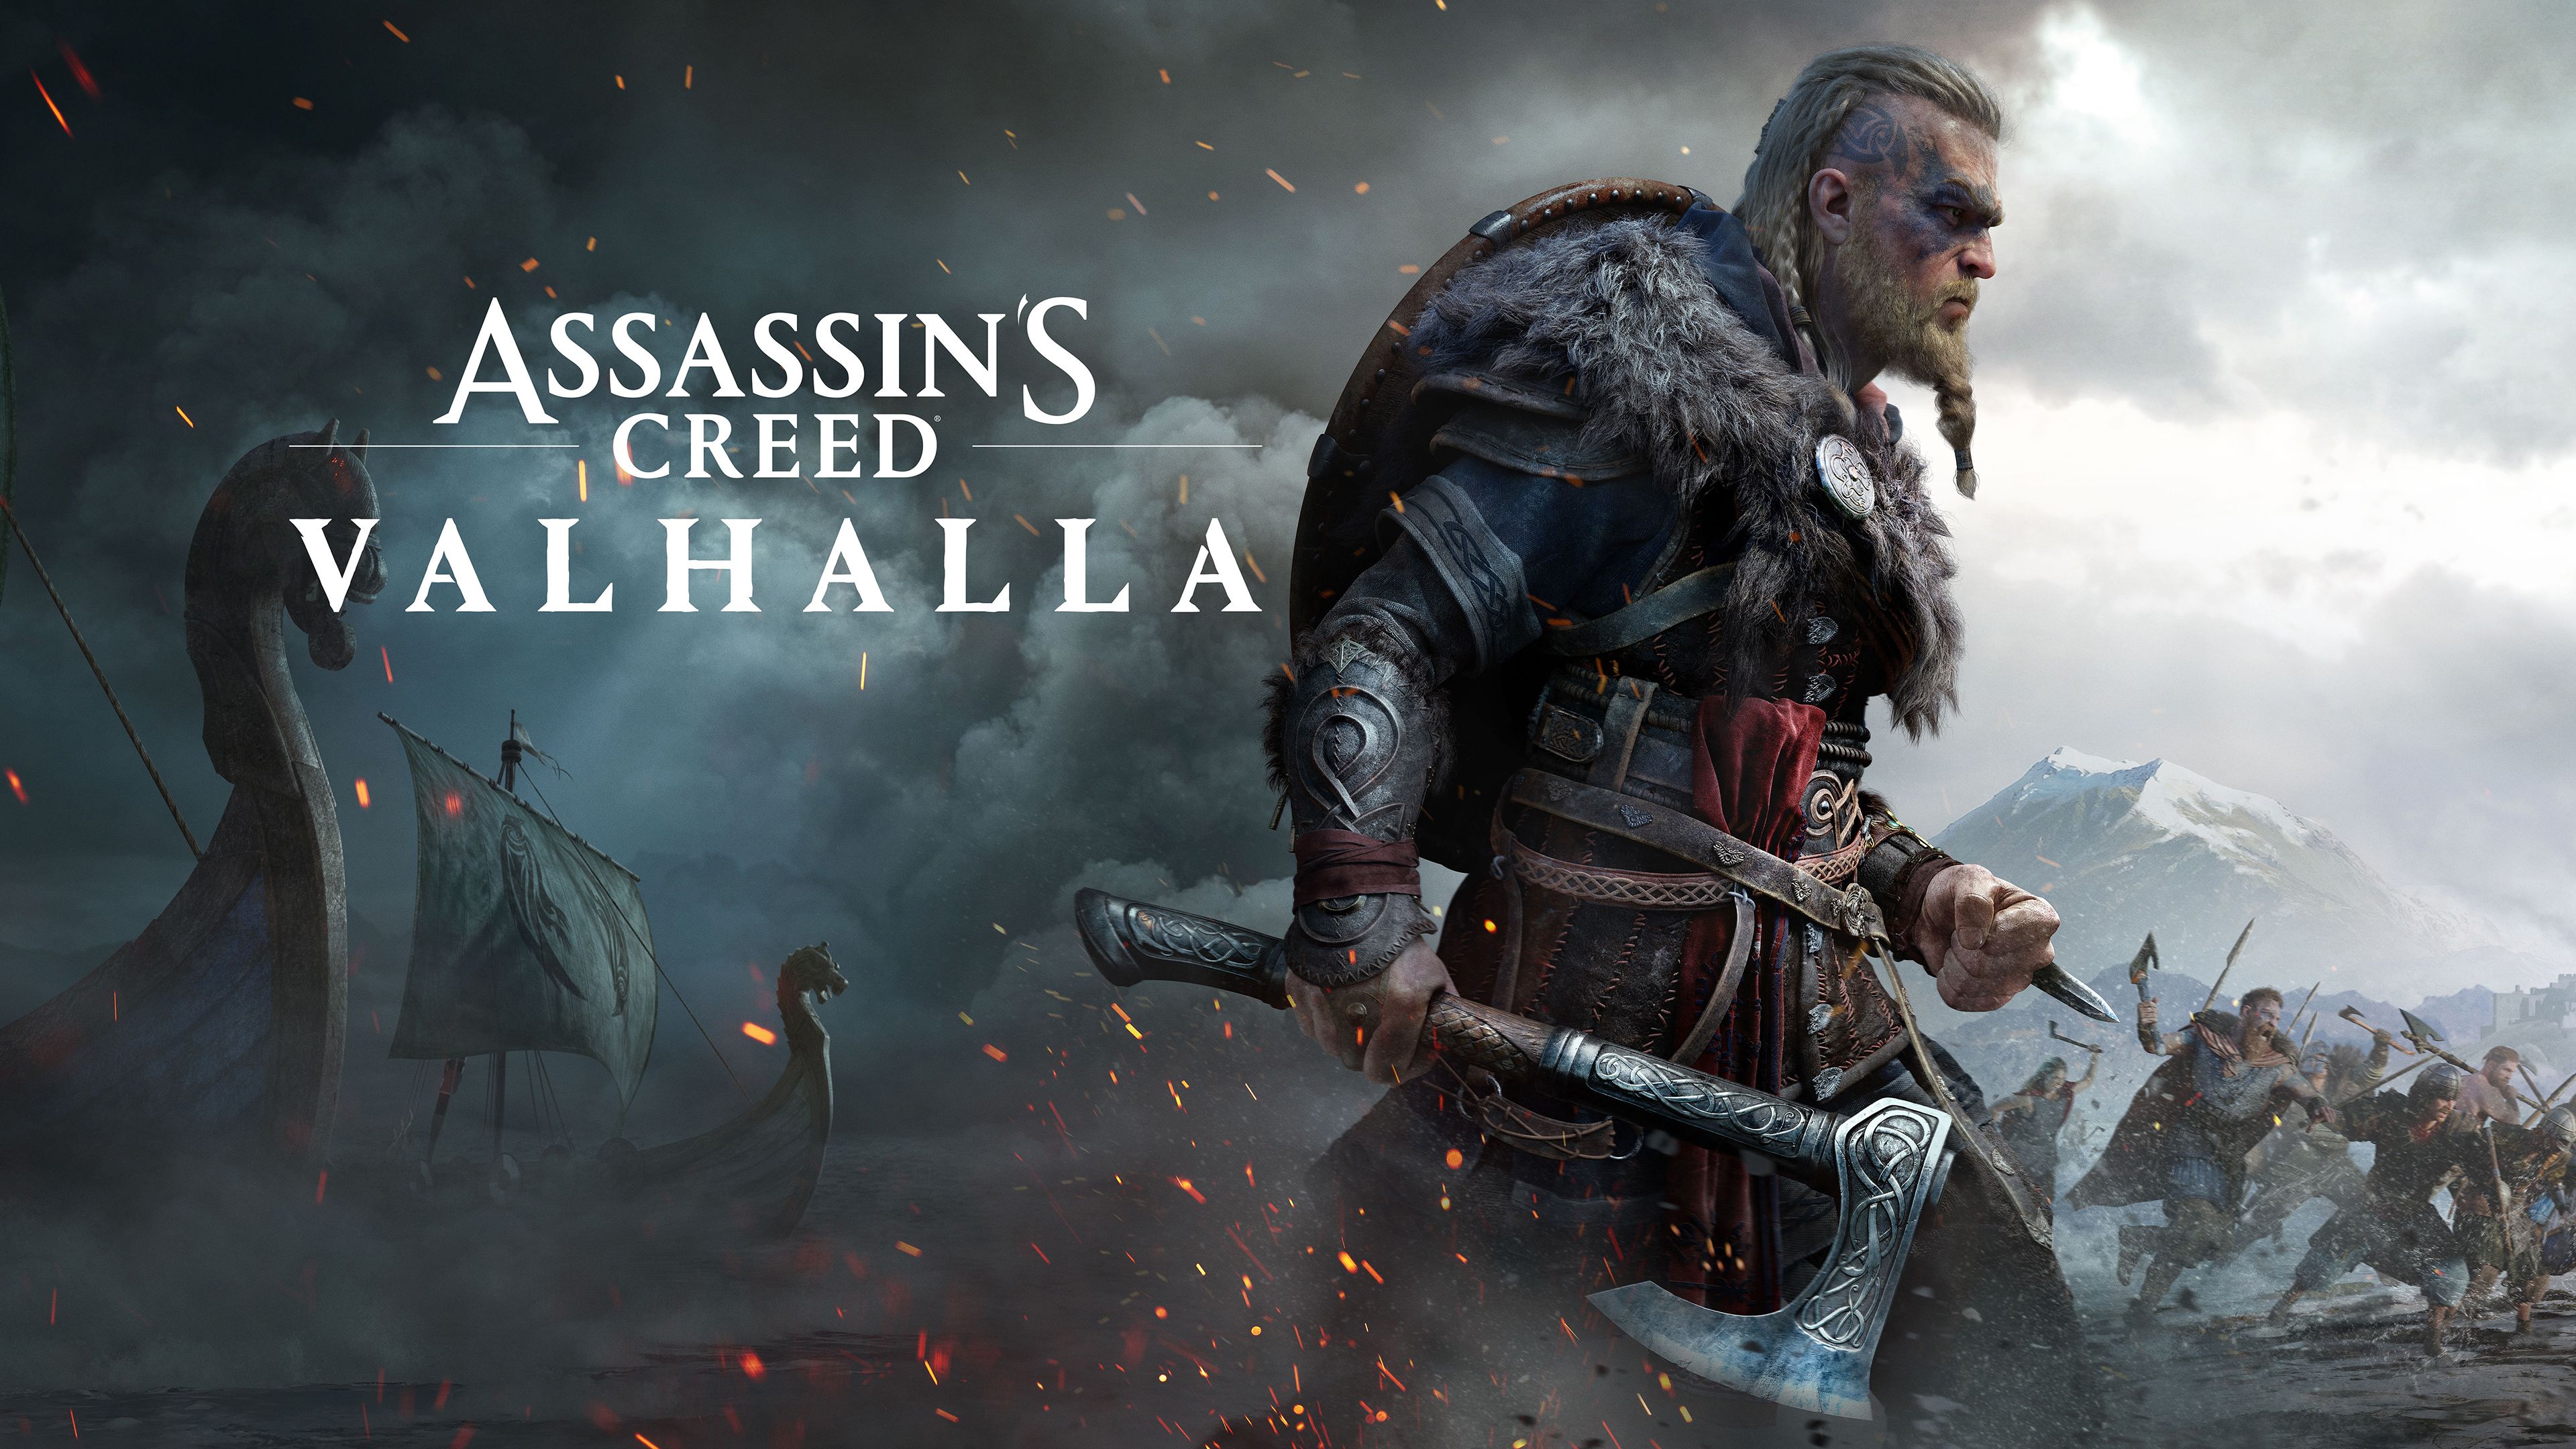 Assassin's Creed Valhalla, Eivor, Viking raider, PC games, PlayStation 4k Free deskk wallpaper, Ultra HD